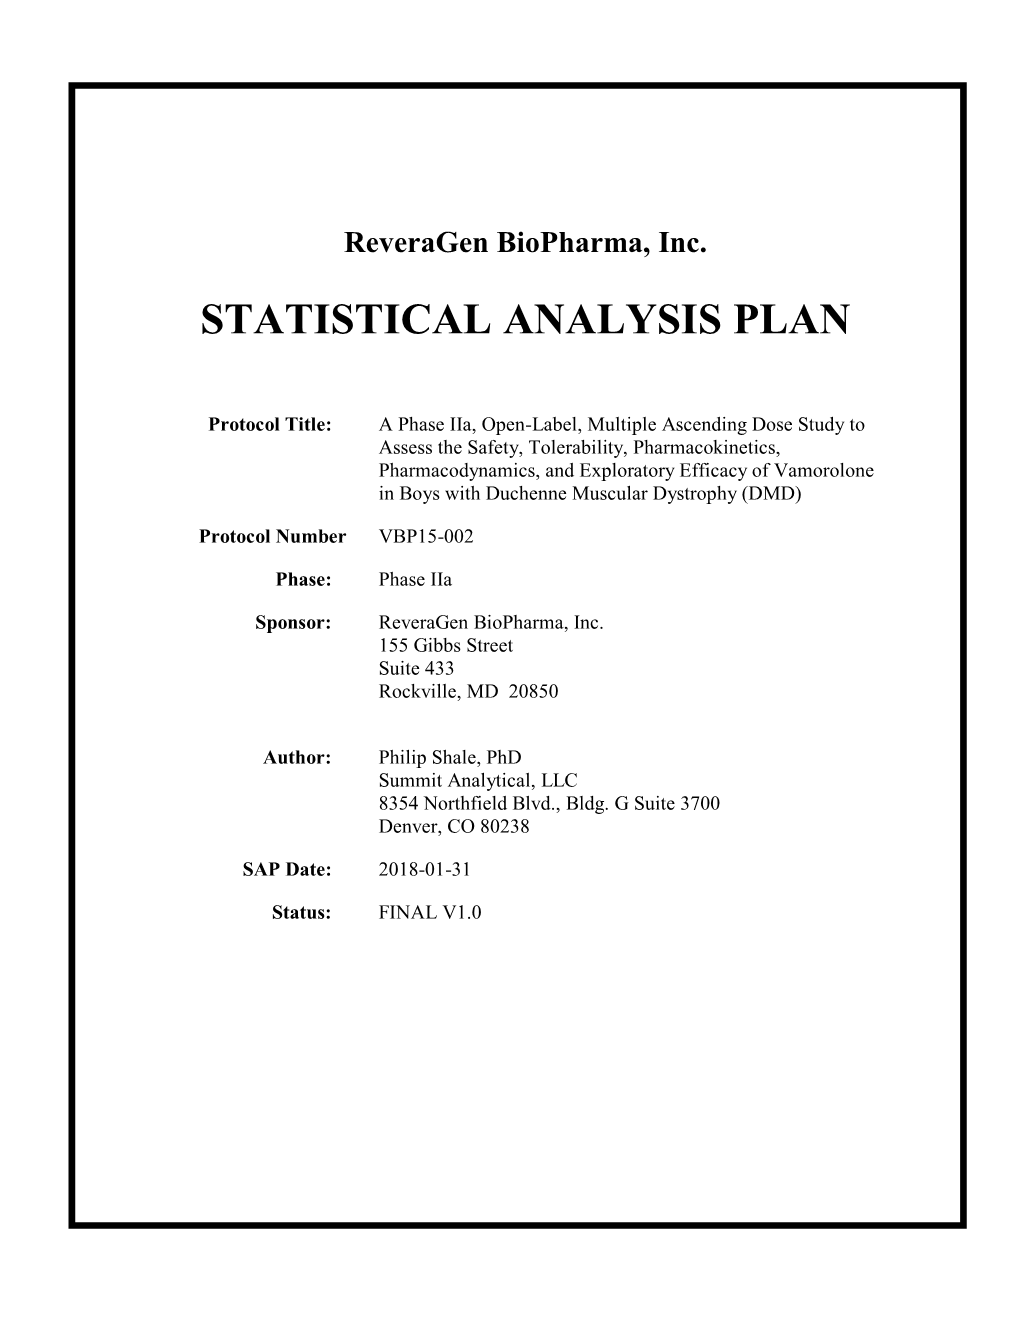 Statistical Analysis Plan